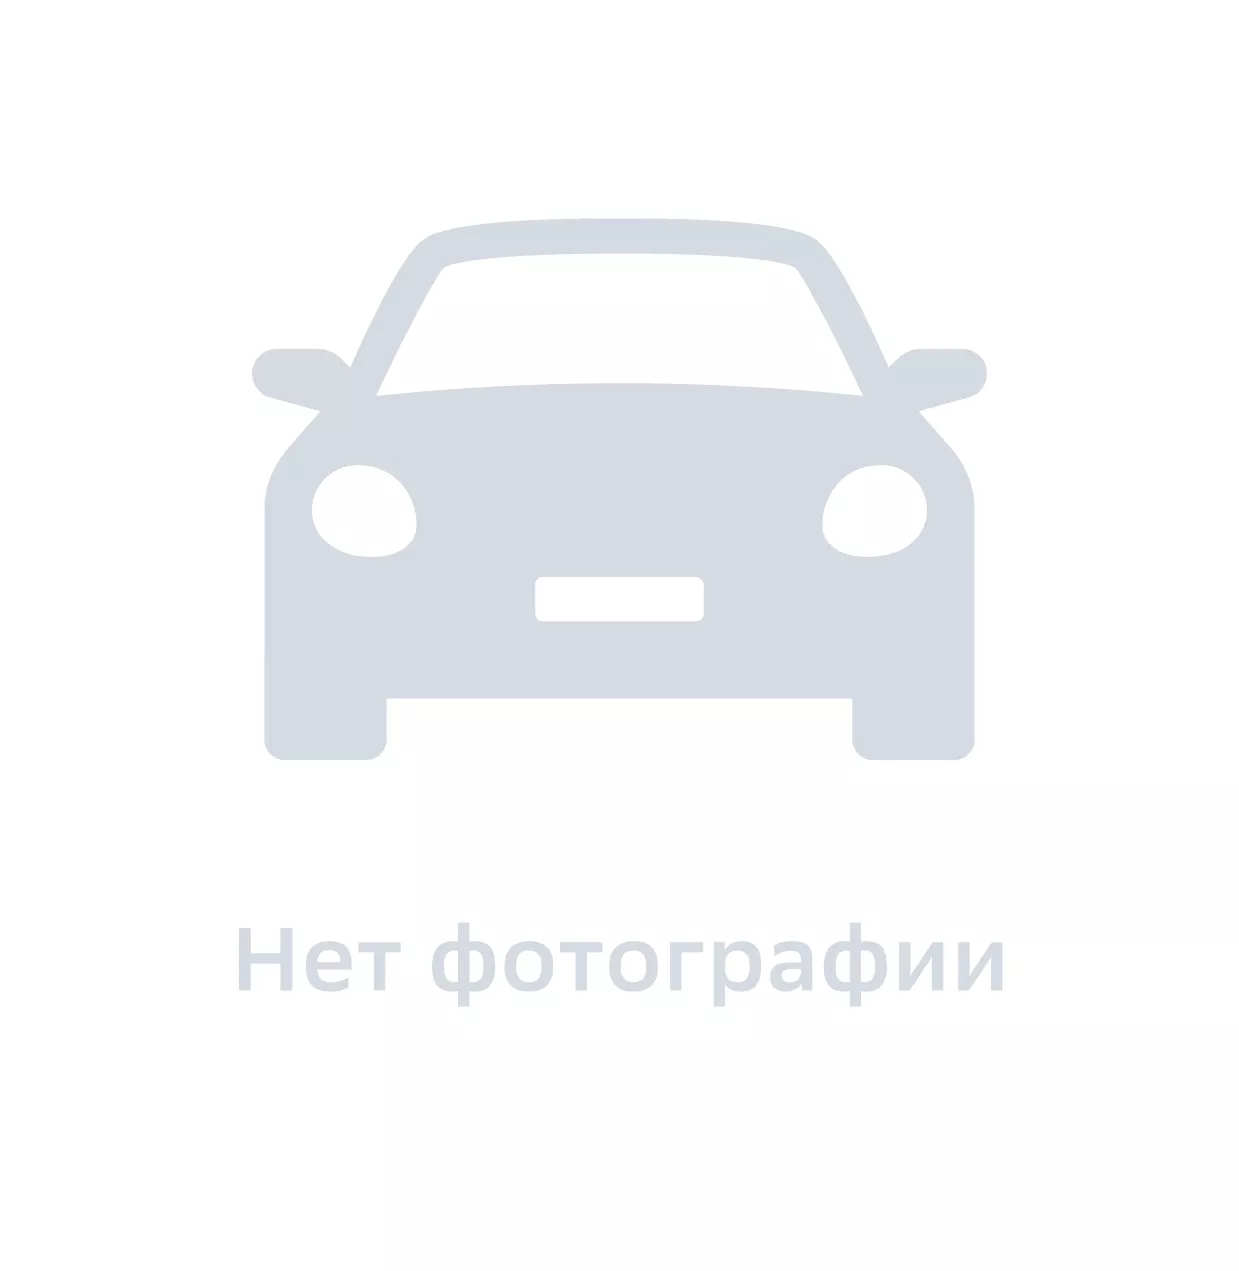 Панель фонаря правая, Hyundai-KIA, арт. 7156317300, цена за 1 шт.